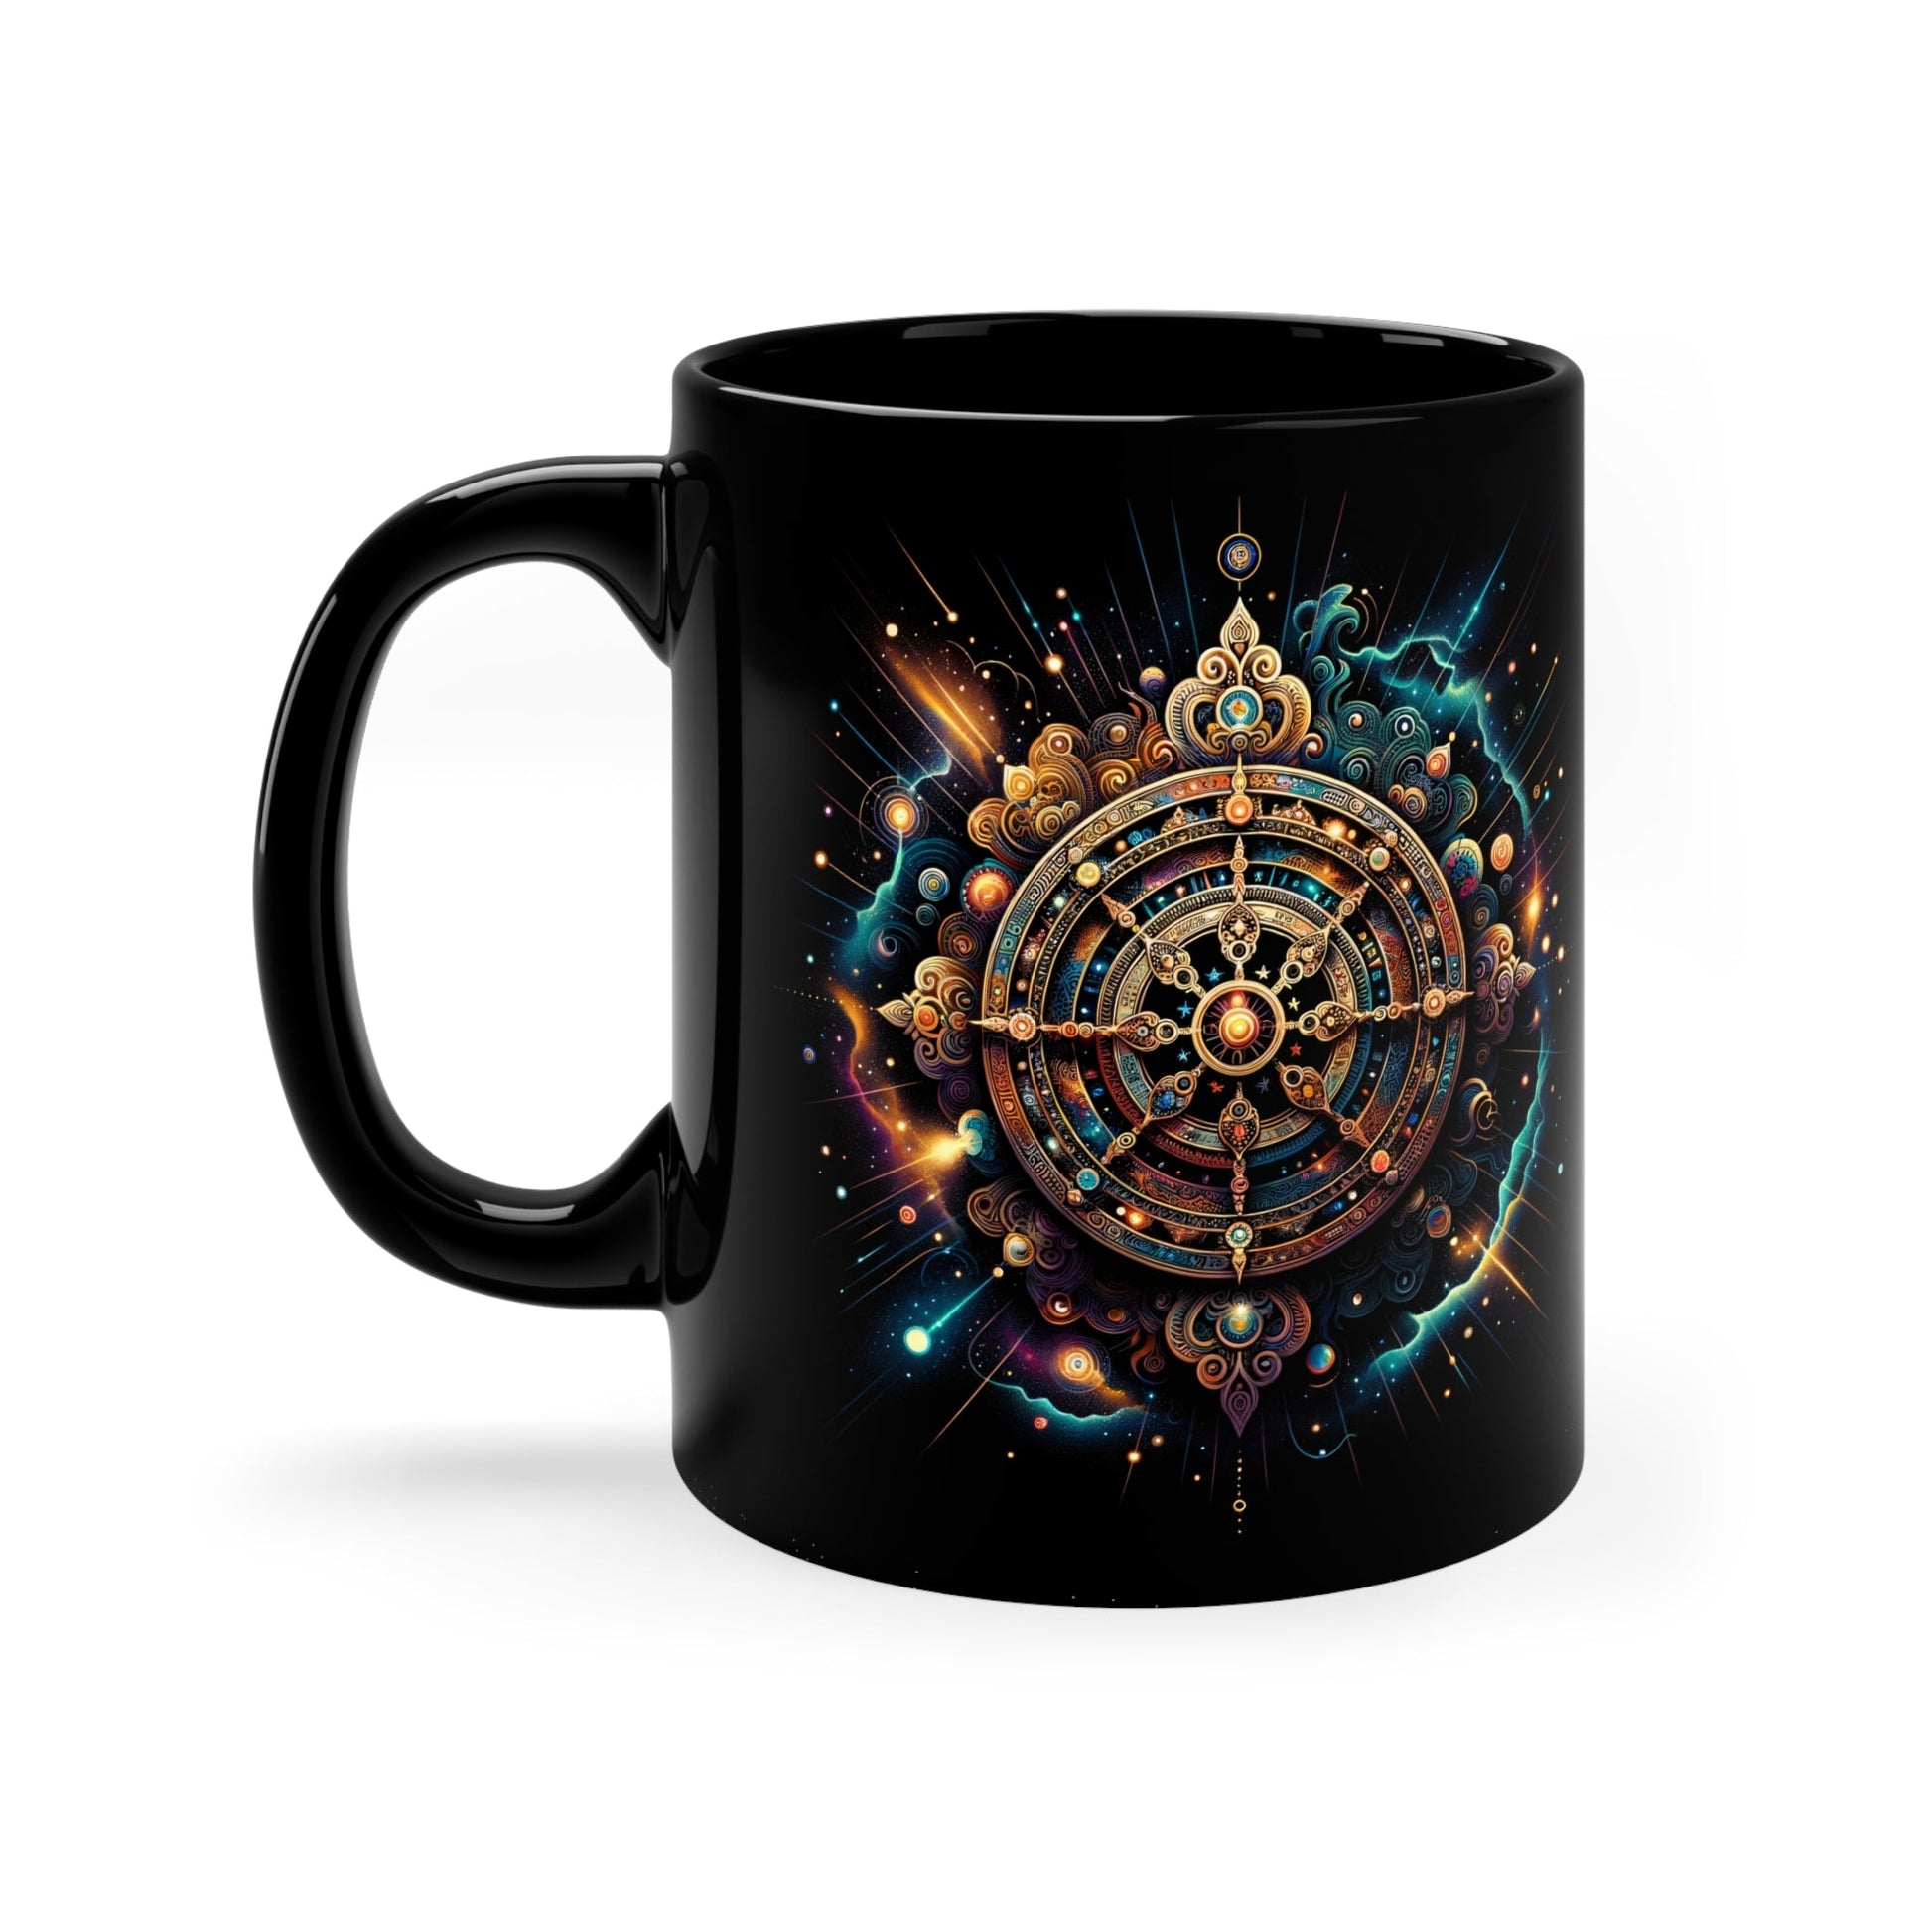 Mug | Coffee Mug | Buddhist Collection - Moikas